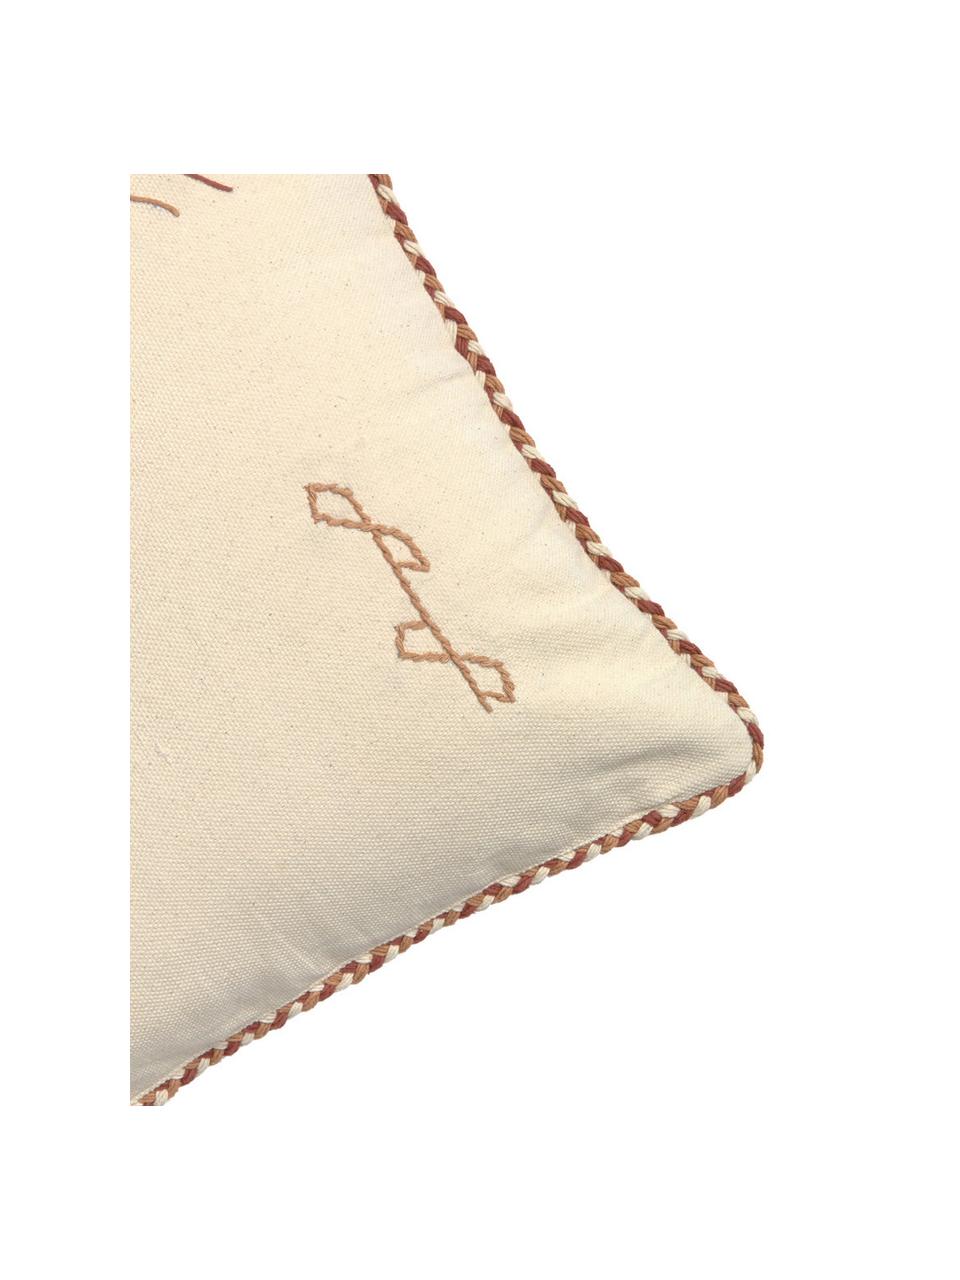 Poszewka na poduszkę Riad, 100% bawełna, Odcienie kremowego, odcienie brązowego, S 45 x D 45 cm